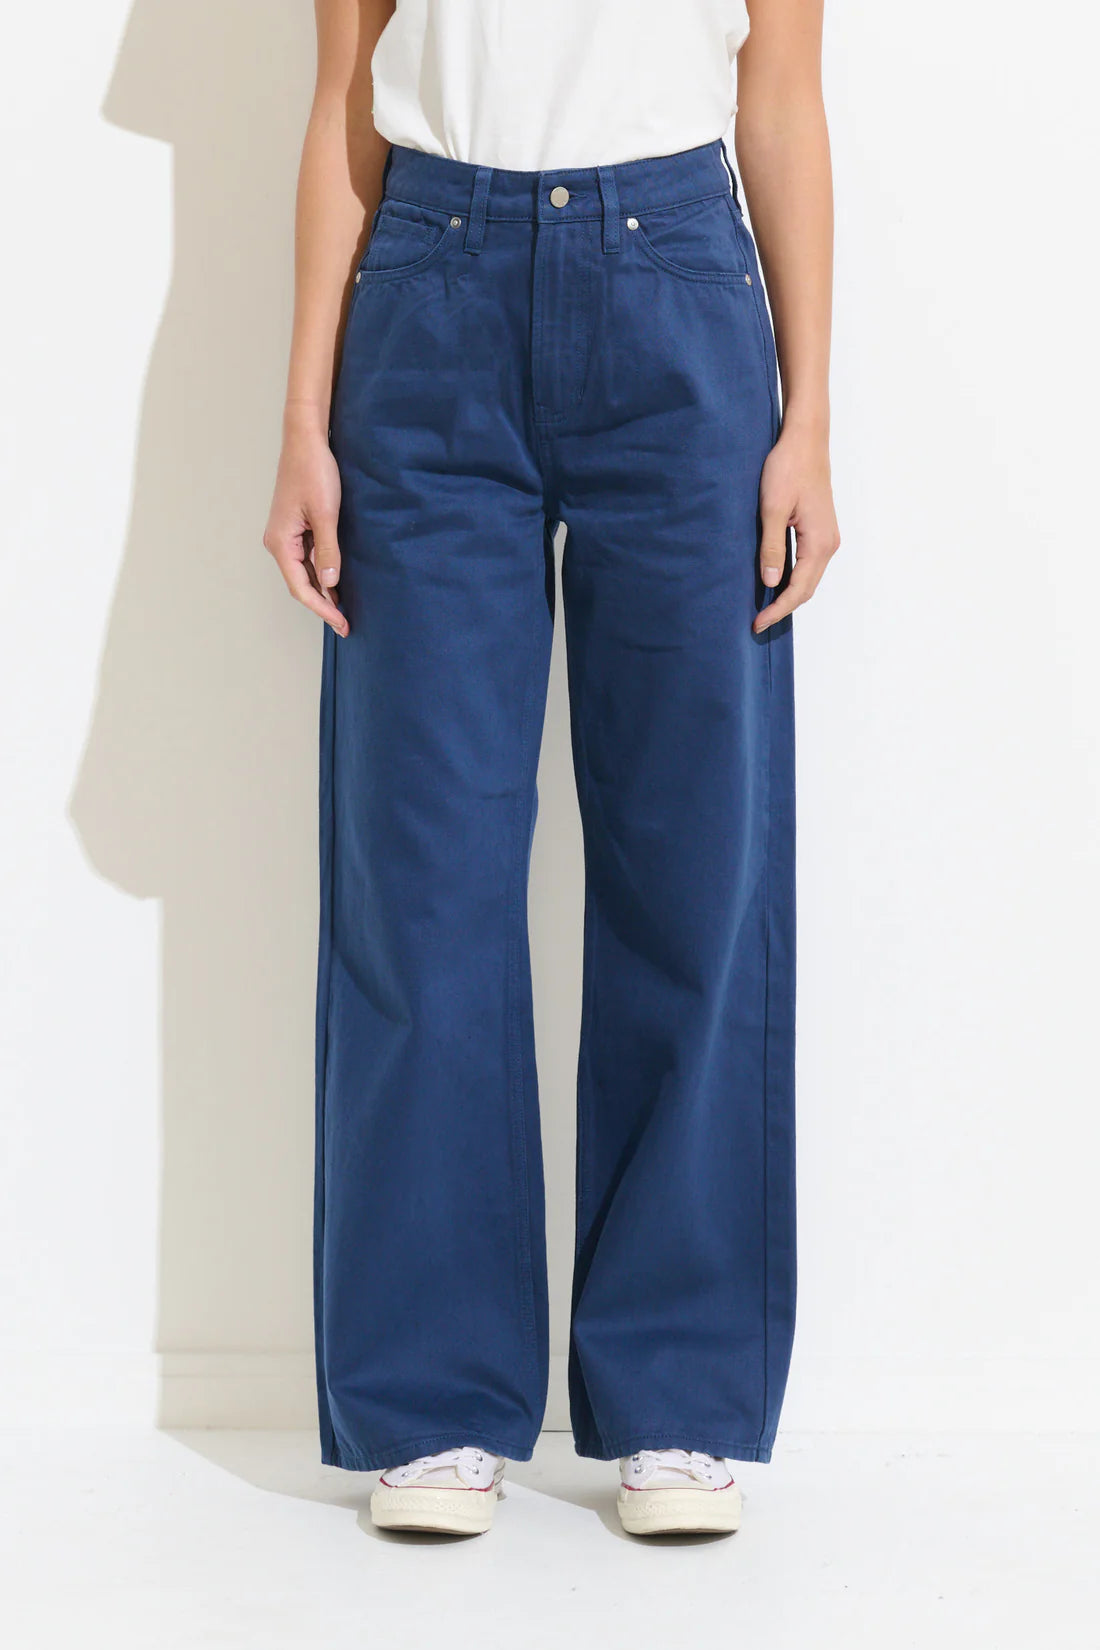 MISFIT // Makers Wide Jean TRUE BLUE